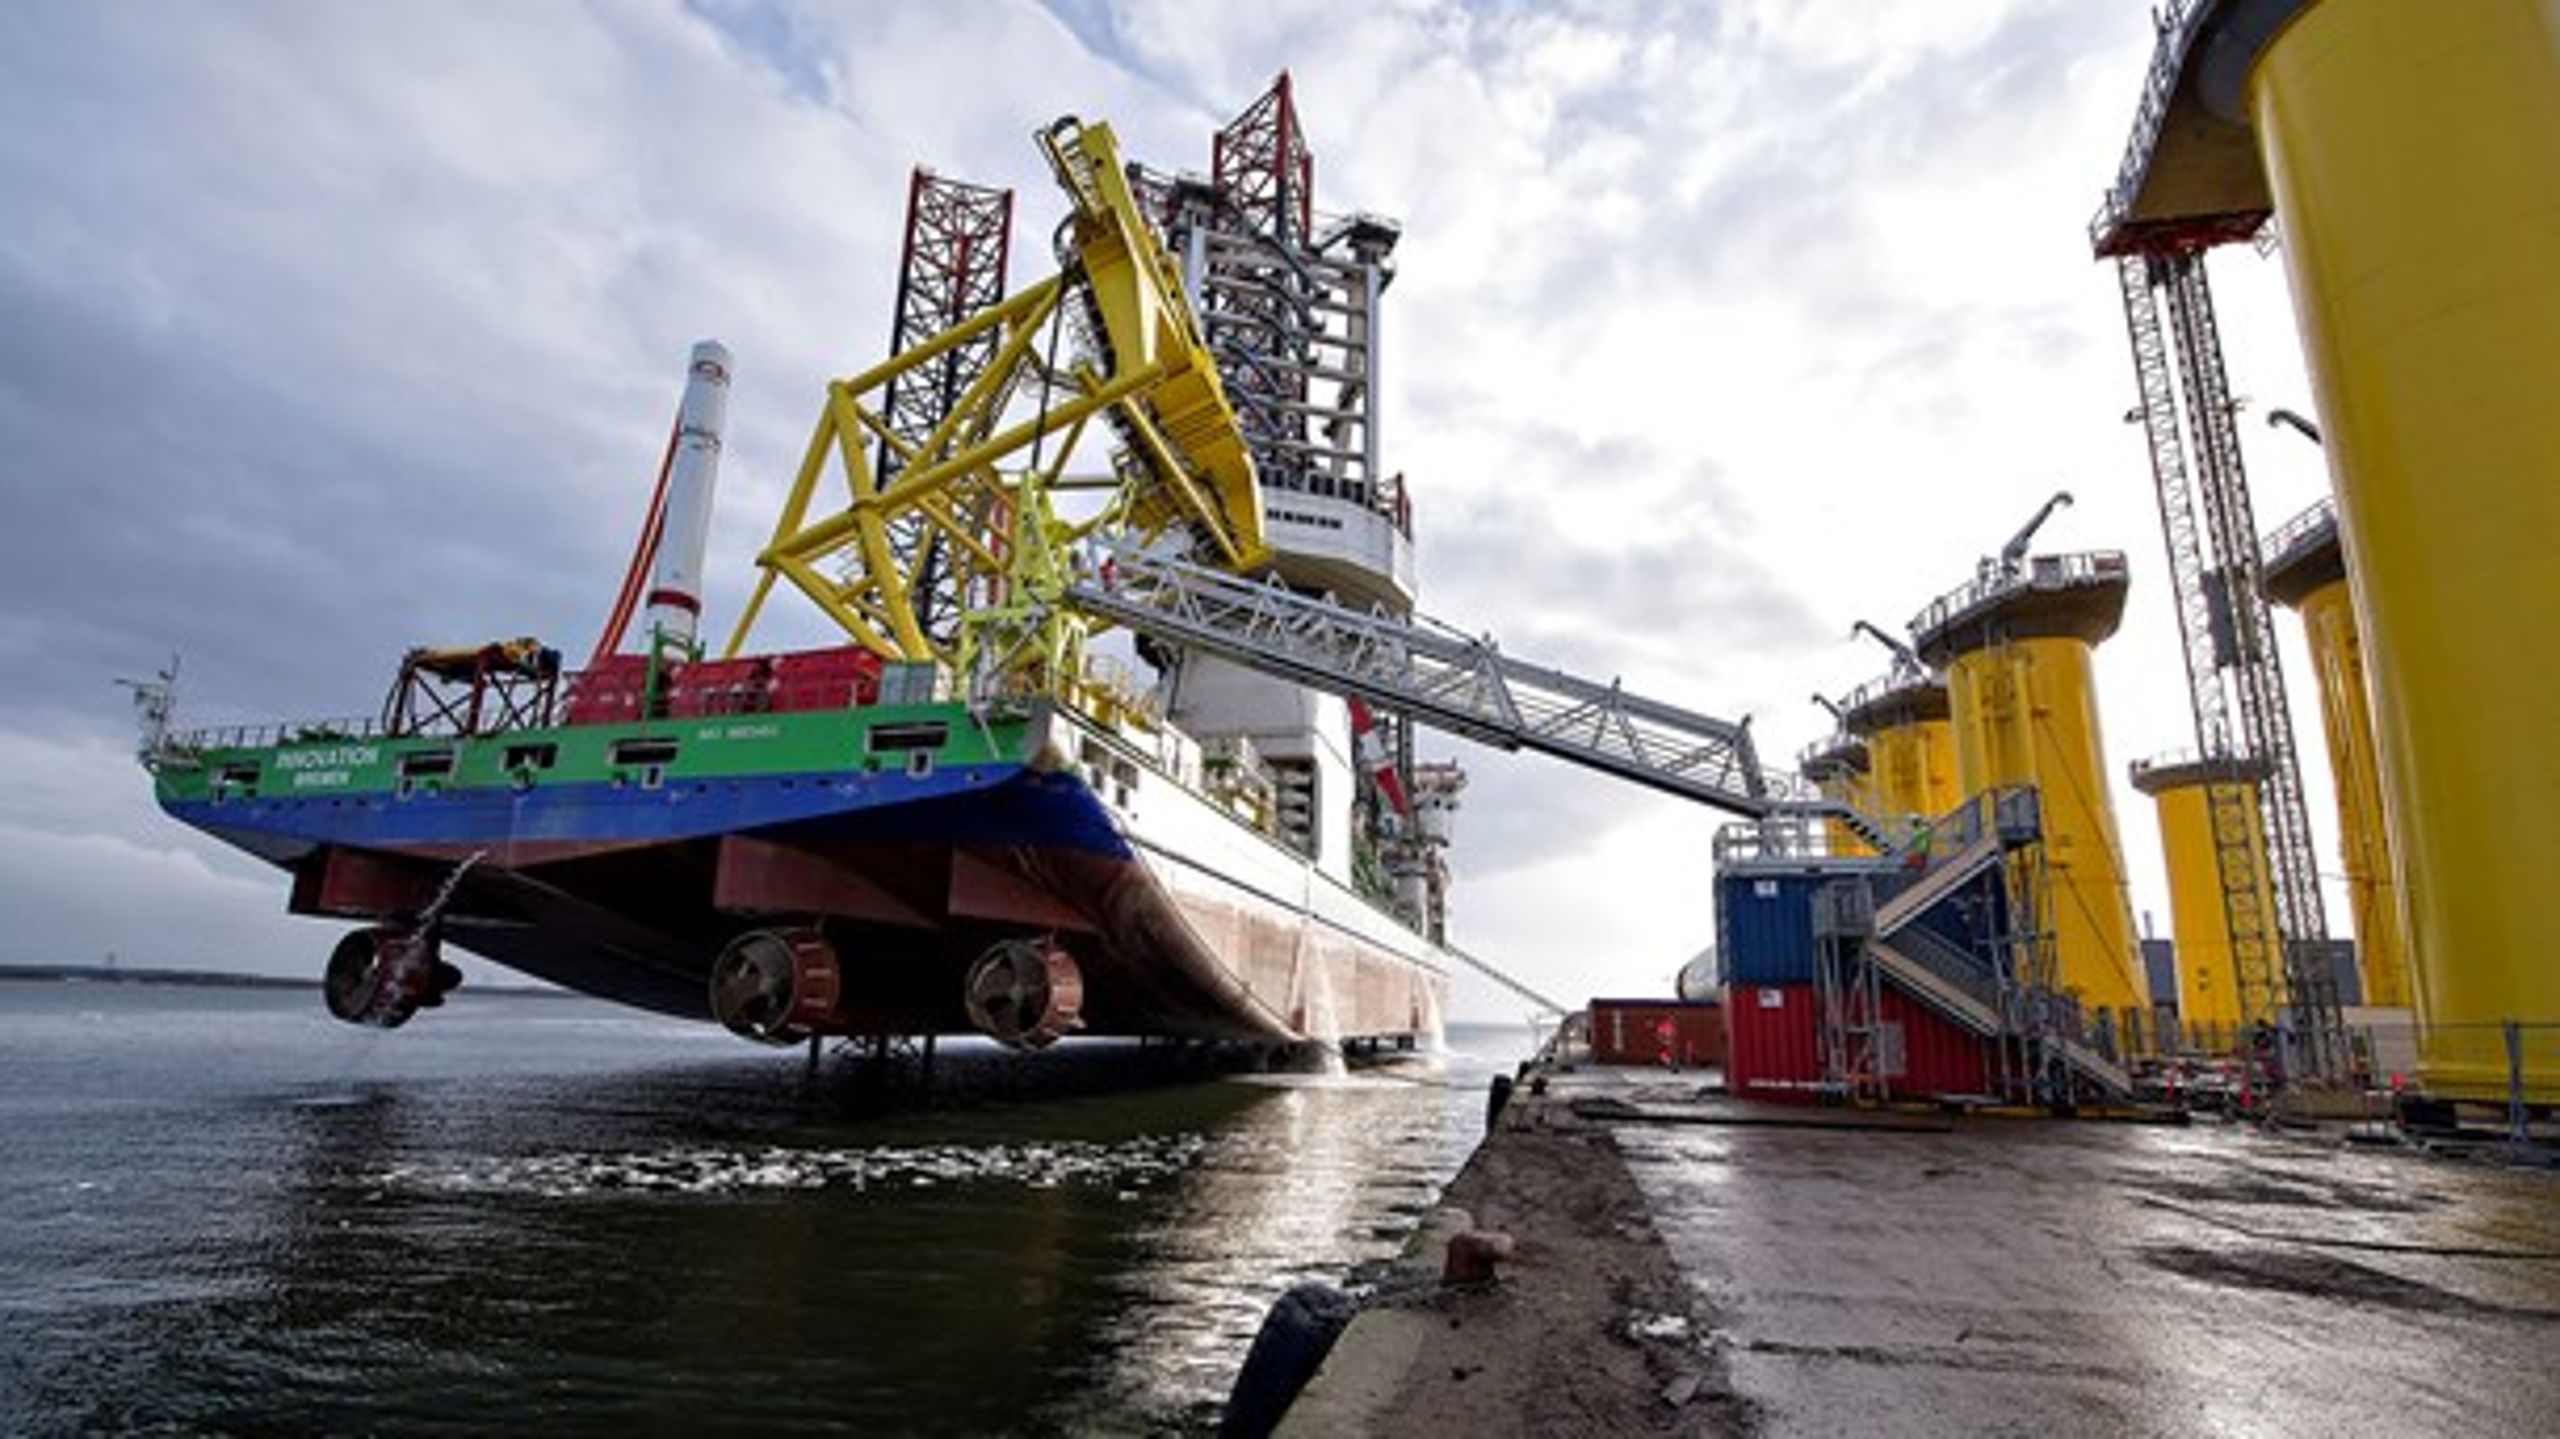 En række problemer som ulovlig støtte og ulige konkurrence skal udbedres i de danske havne med en ny havnelov. Det mener Danske Havnevirksomheder, der efterspørger politisk handling.